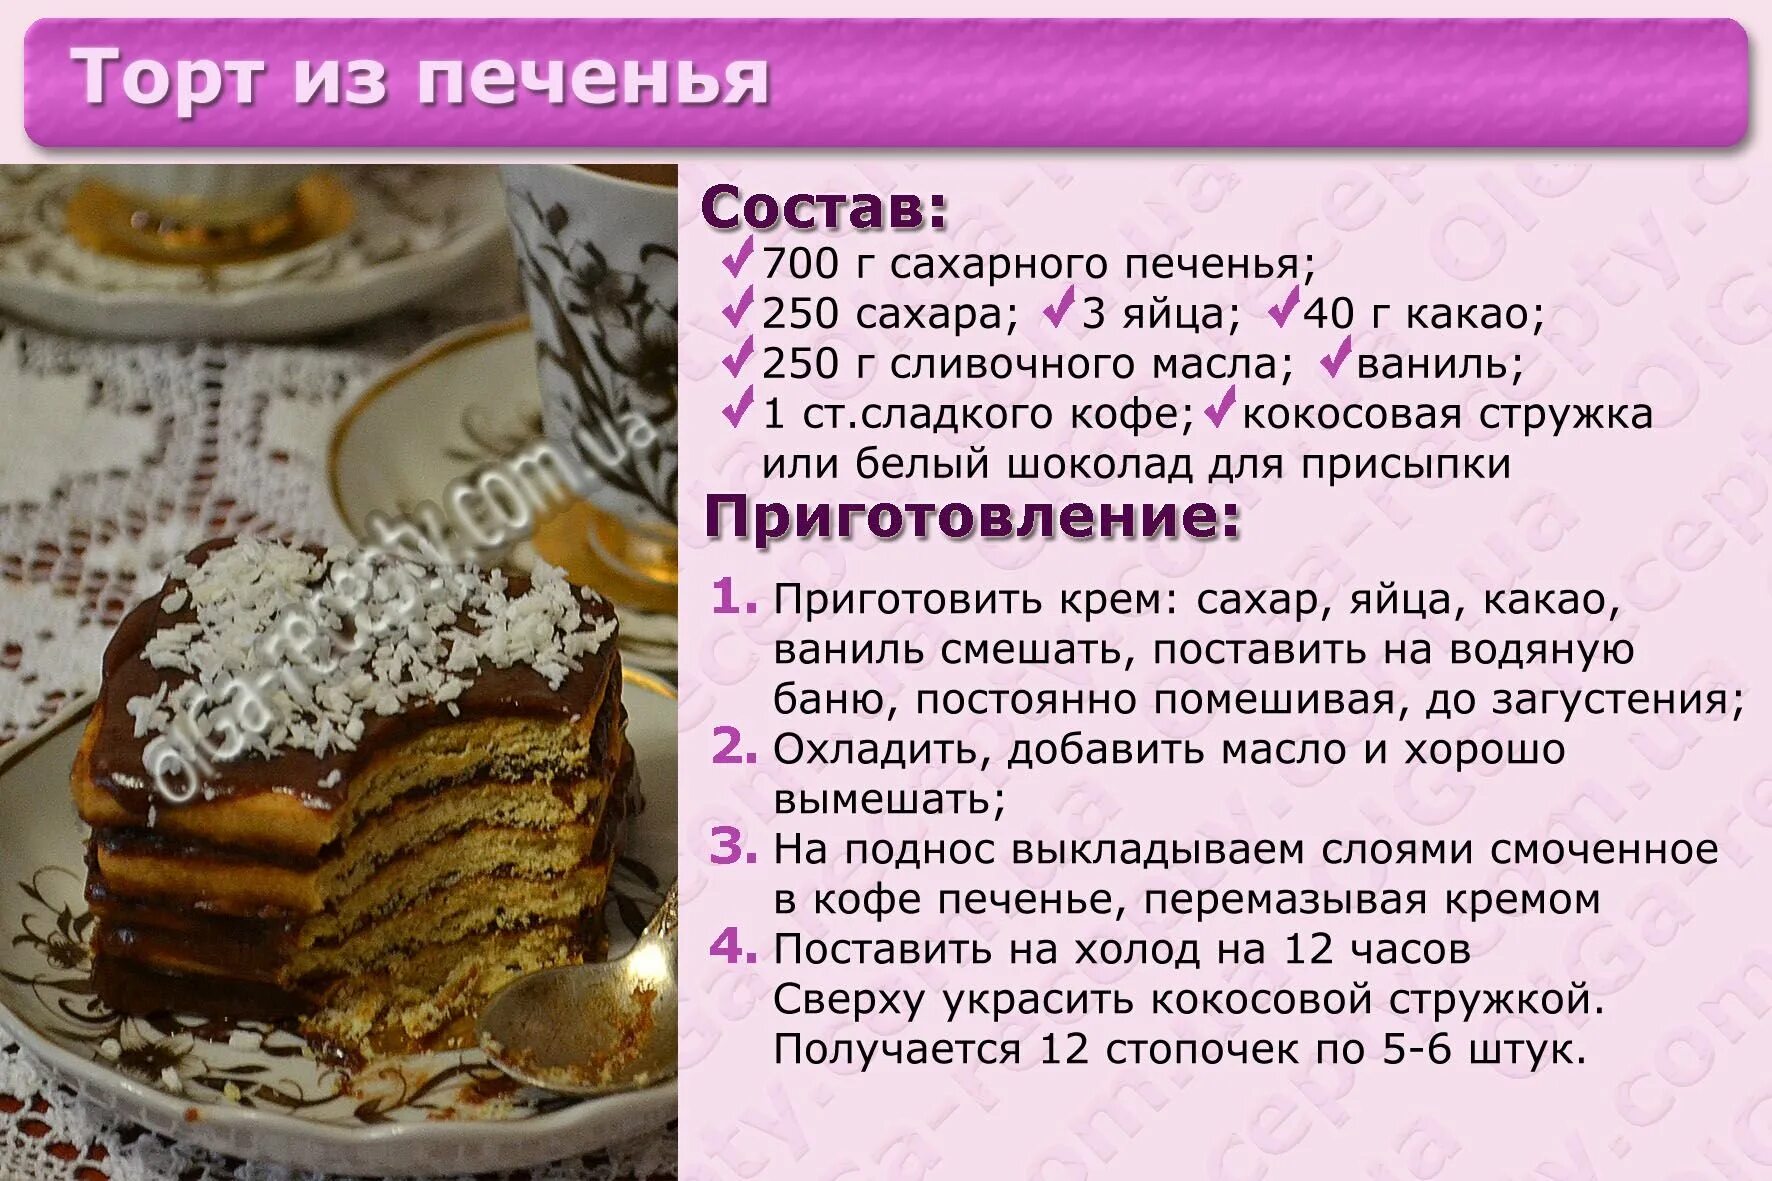 Картинки с рецептами тортов. Несложные рецепты тортов с картинкой. Рецепт торта картинки с описанием. Приготовление торта картинки.